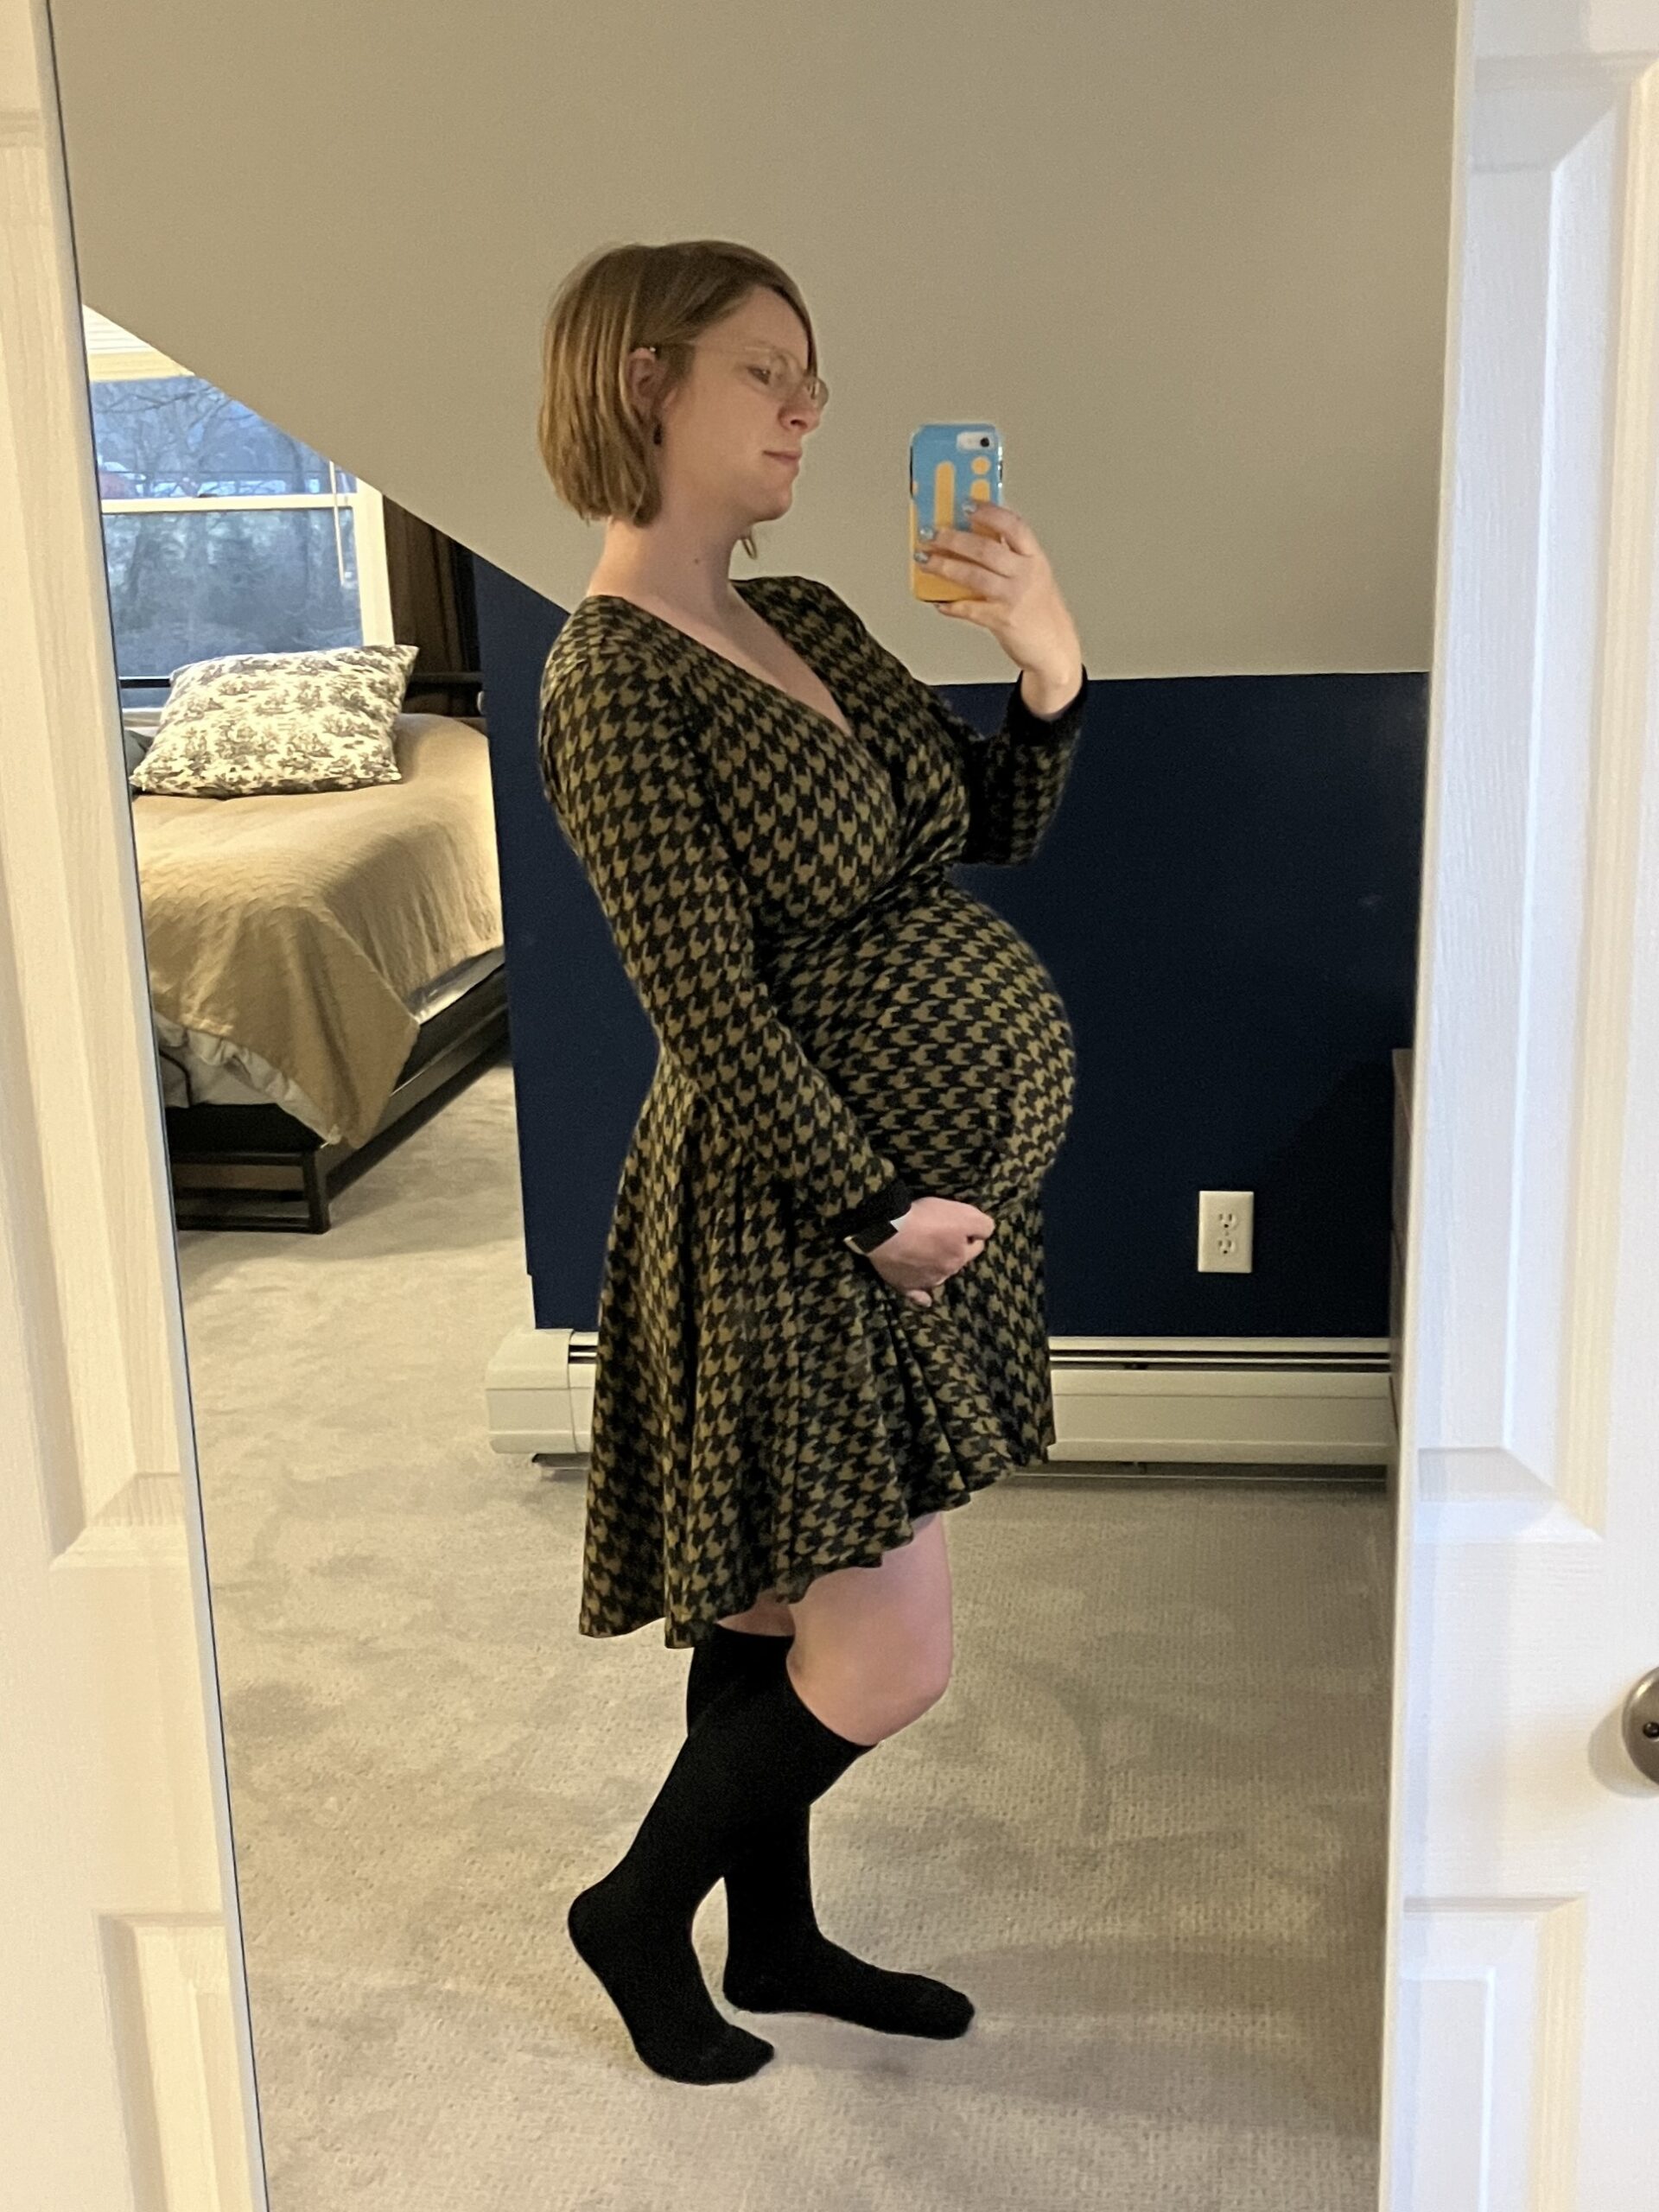 Do I Need My Own Maternity Dress?